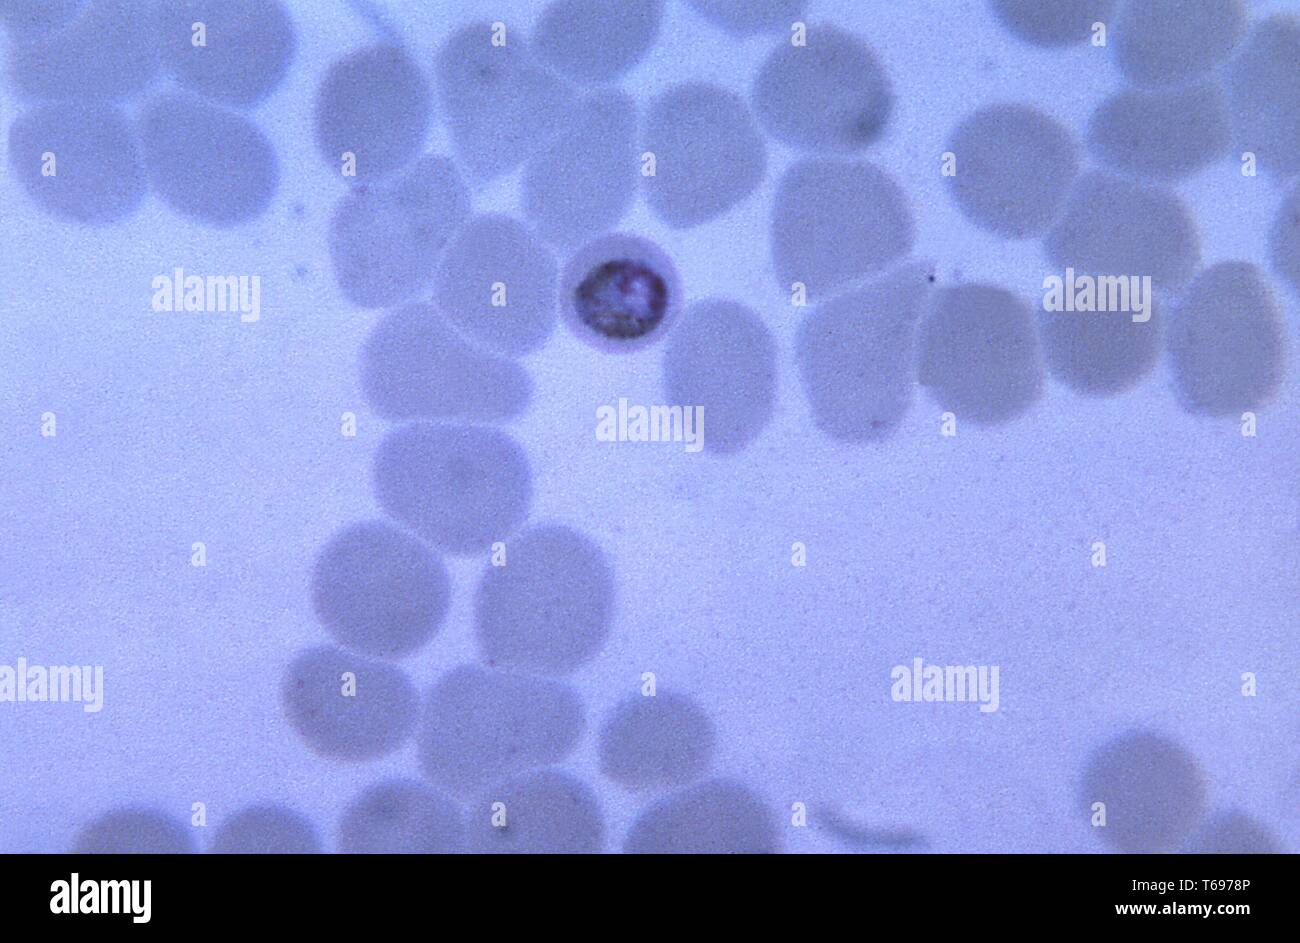 Thin Film Schliffbild einer wachsenden, abgerundete Plasmodium malariae trophozoite innerhalb eines etwas kleiner als normale rote Blutkörperchen, 1965. Bild mit freundlicher Genehmigung von CDC/Dr. Mae Melvin. () Stockfoto